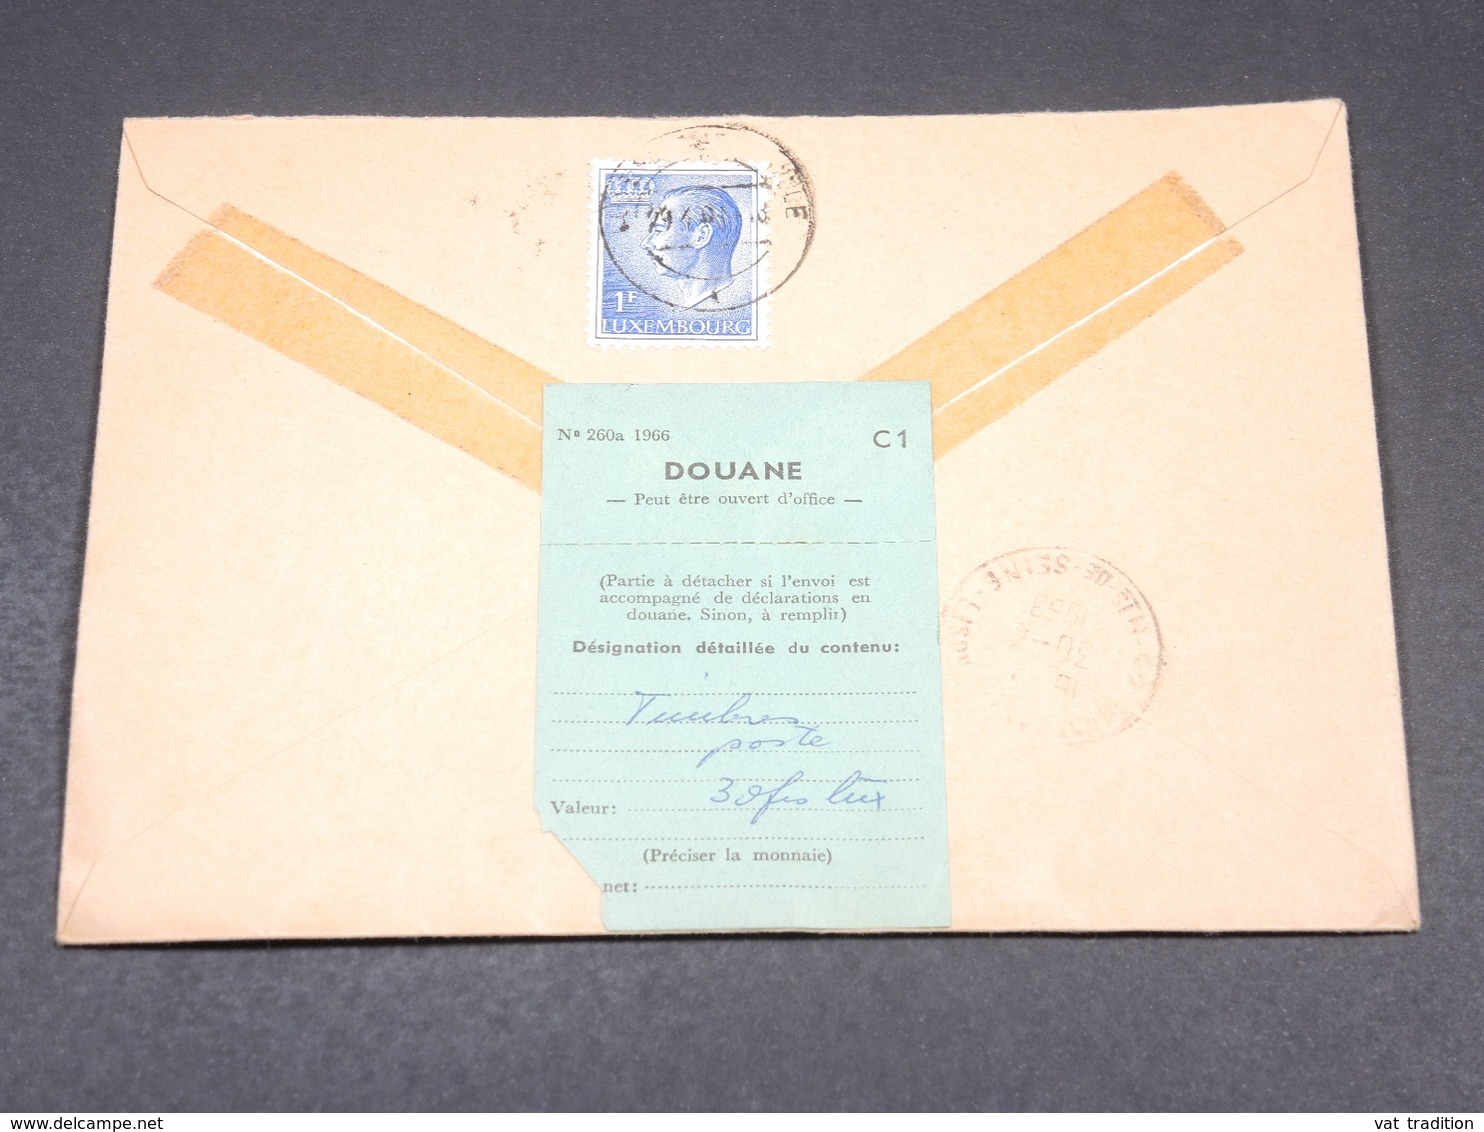 LUXEMBOURG - Enveloppe En Recommandé Des PTT Pour La France En 1968 , étiquette Pour La Douane Au Dos - L 19085 - Covers & Documents